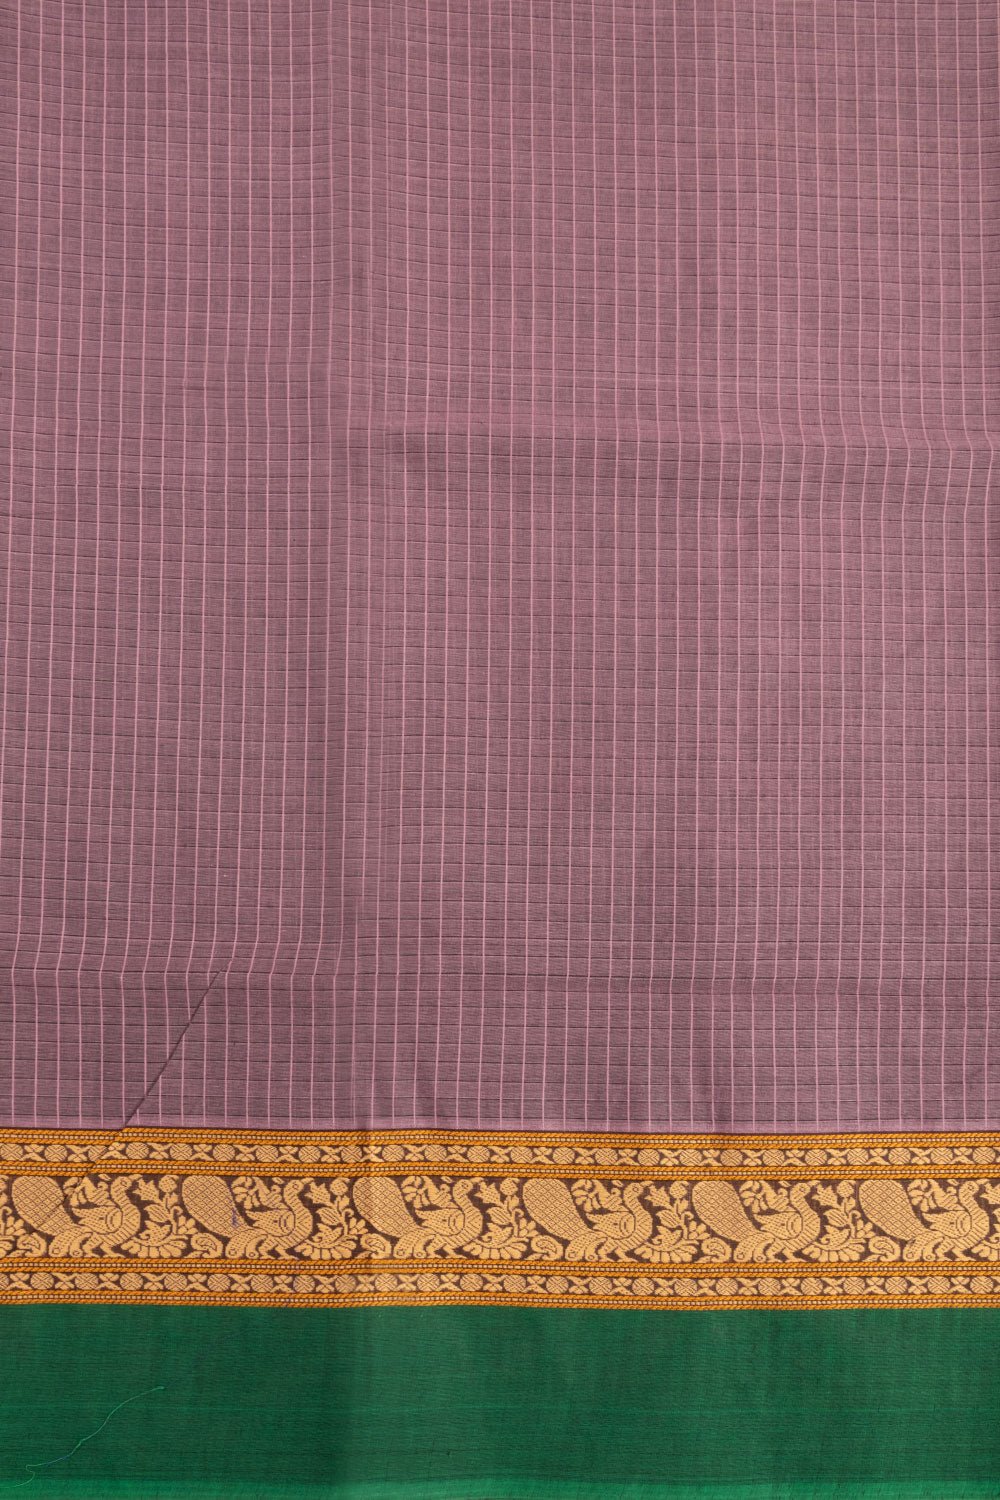 Mavue Handwoven Kanchi Cotton Saree 10068511 - Avishya